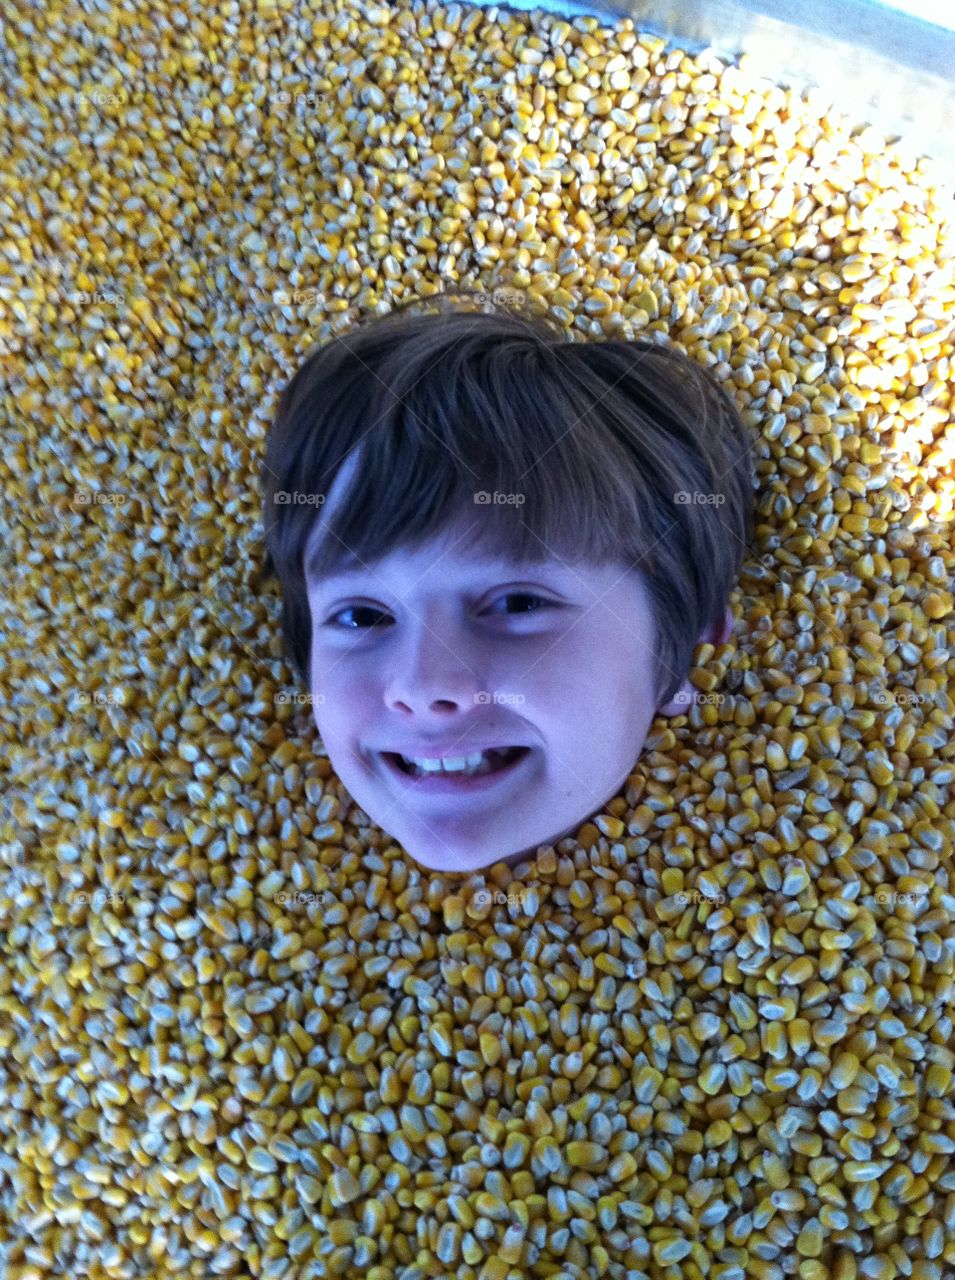 Playing in corn box